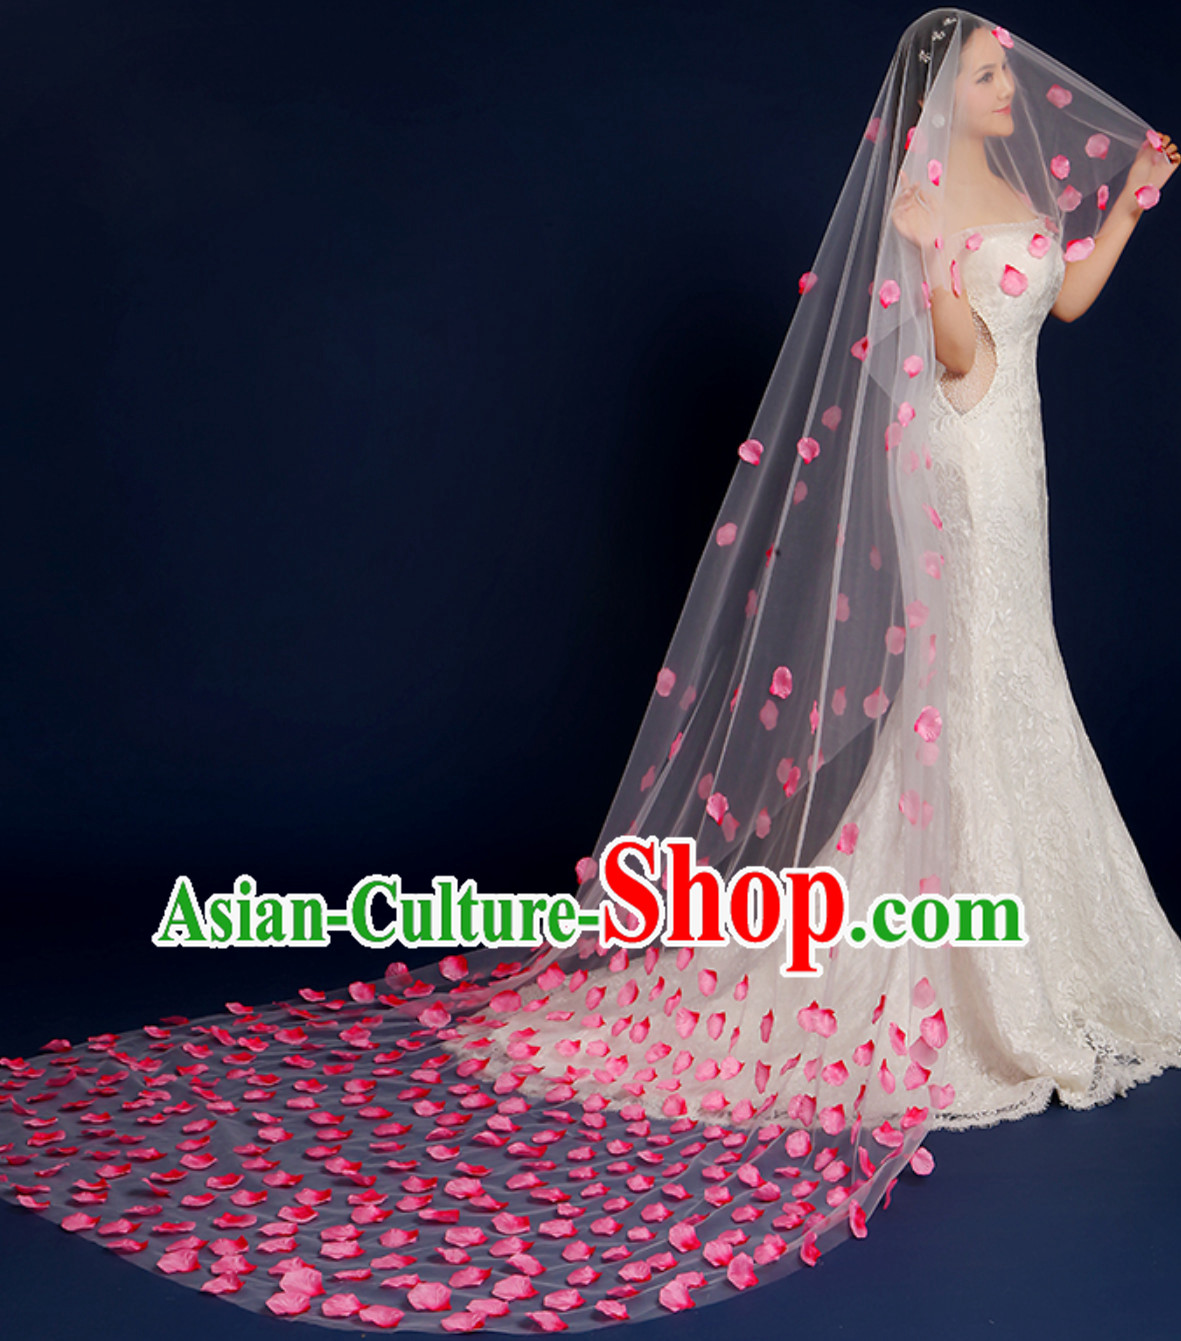 1.75 Meters Long Handmade Romantic Flower Petal Wedding Veil